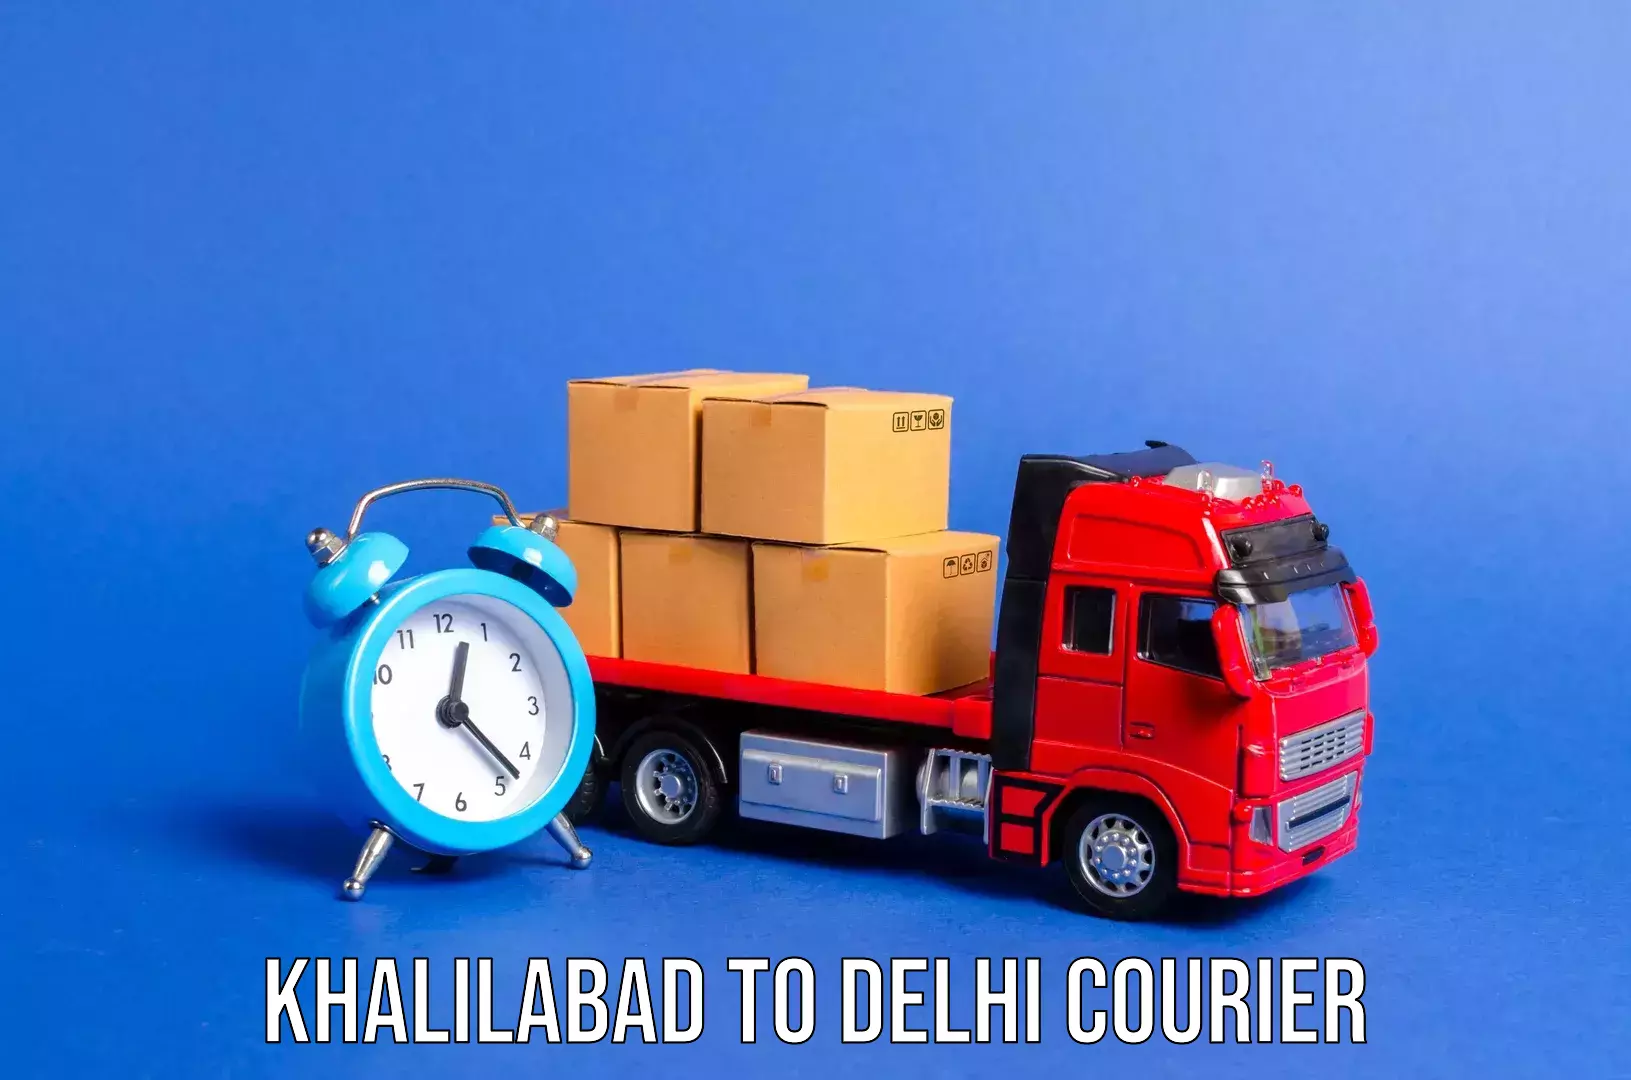 Hassle-free luggage shipping Khalilabad to University of Delhi